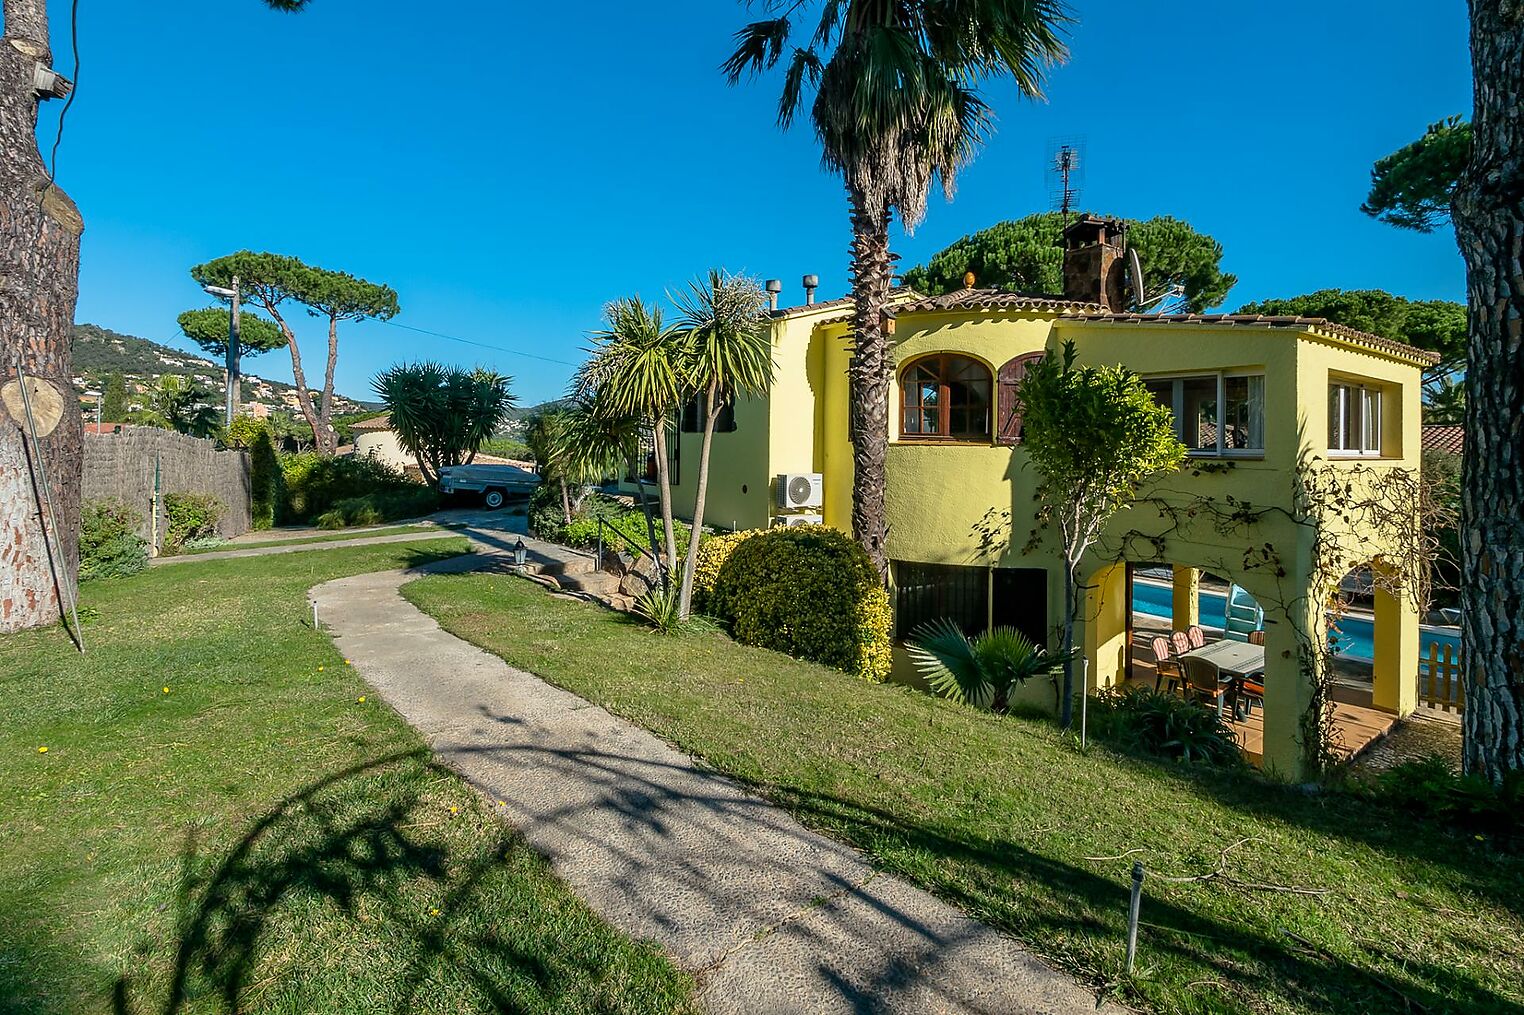 Grande maison individuelle située sur un magnifique terrain dans un quartier résidentiel calme, à 10 minutes à pied de la plage.